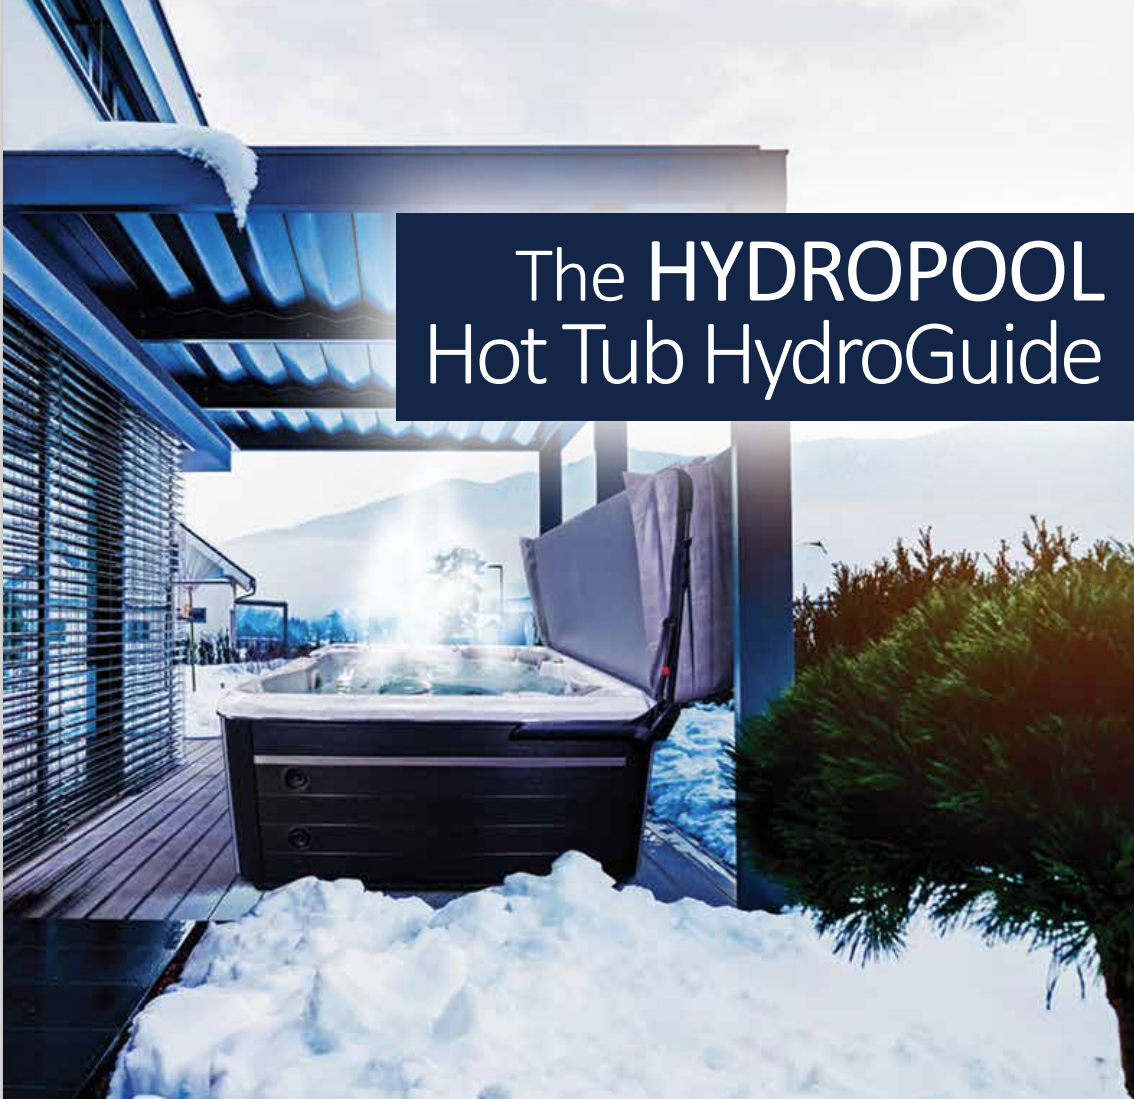 The HYDROPOOL  Hot Tub HydroGuide